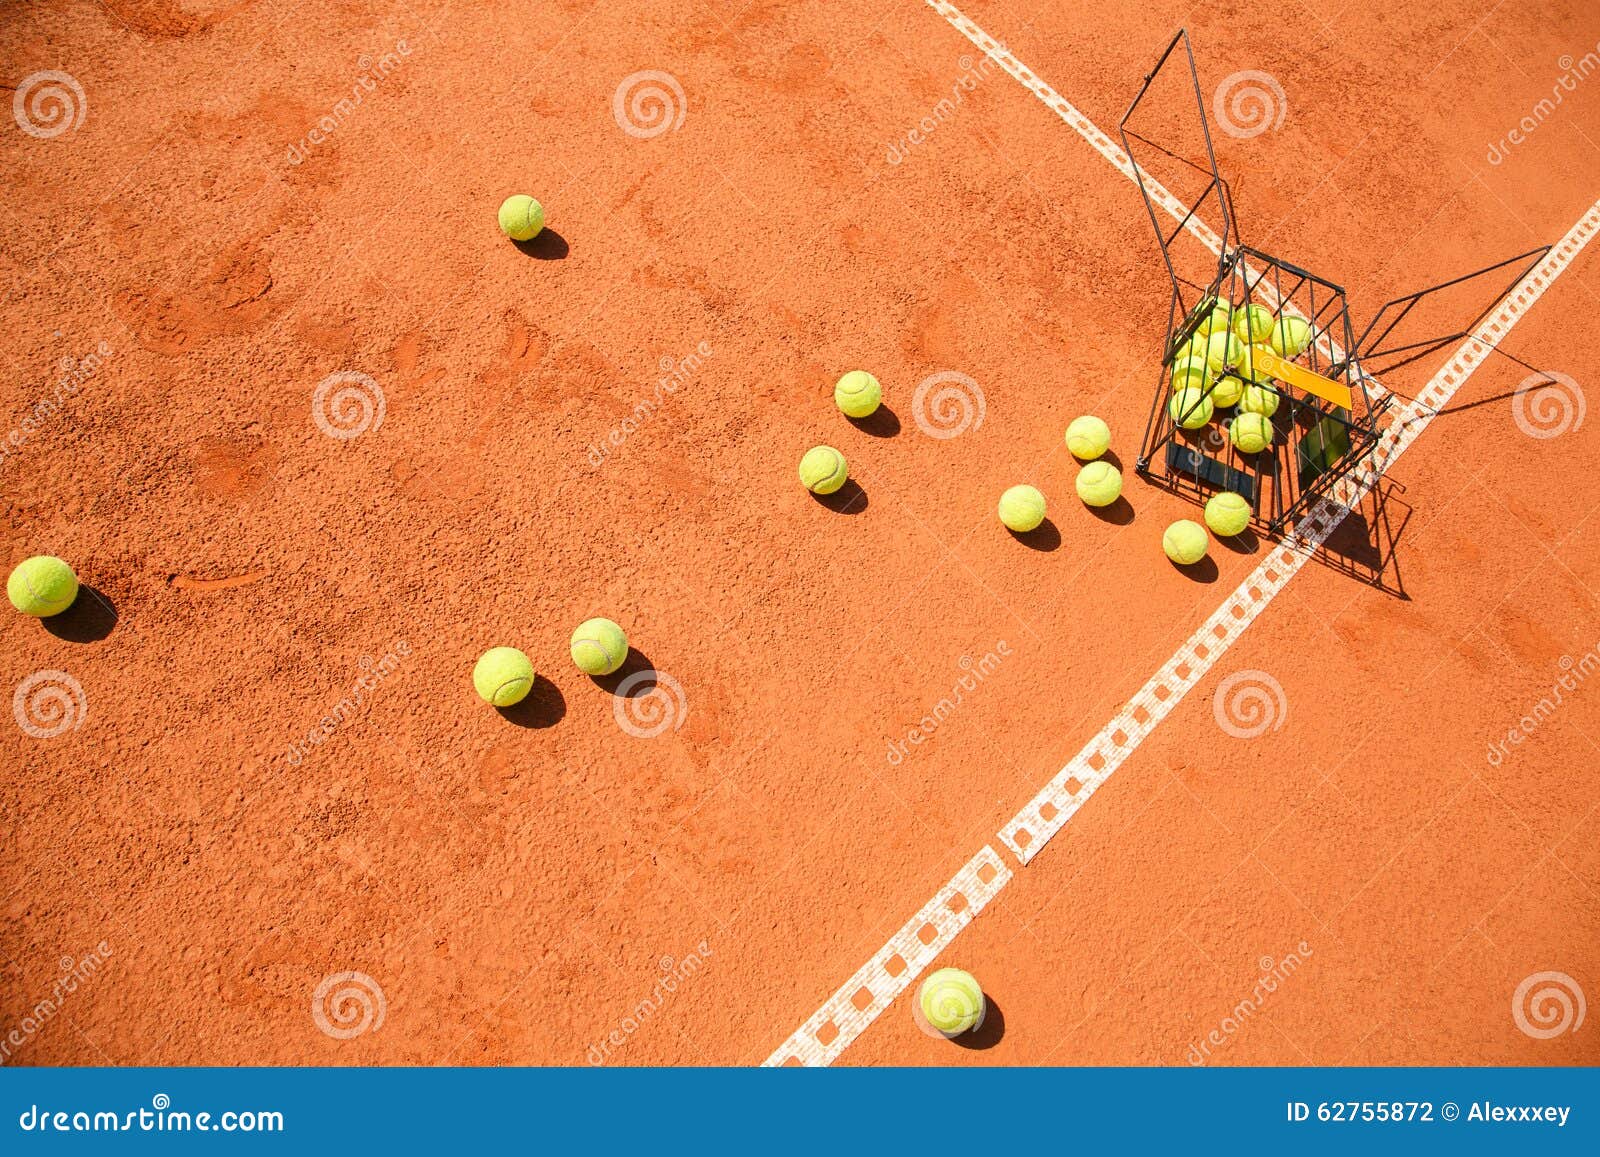 Игры с теннисными шариками. Теннисный корт корзина с мячами. Корзины с теннисными мячиками. Собирают мячи для тенниса. Корзина с теннисными мячами фотосессия.